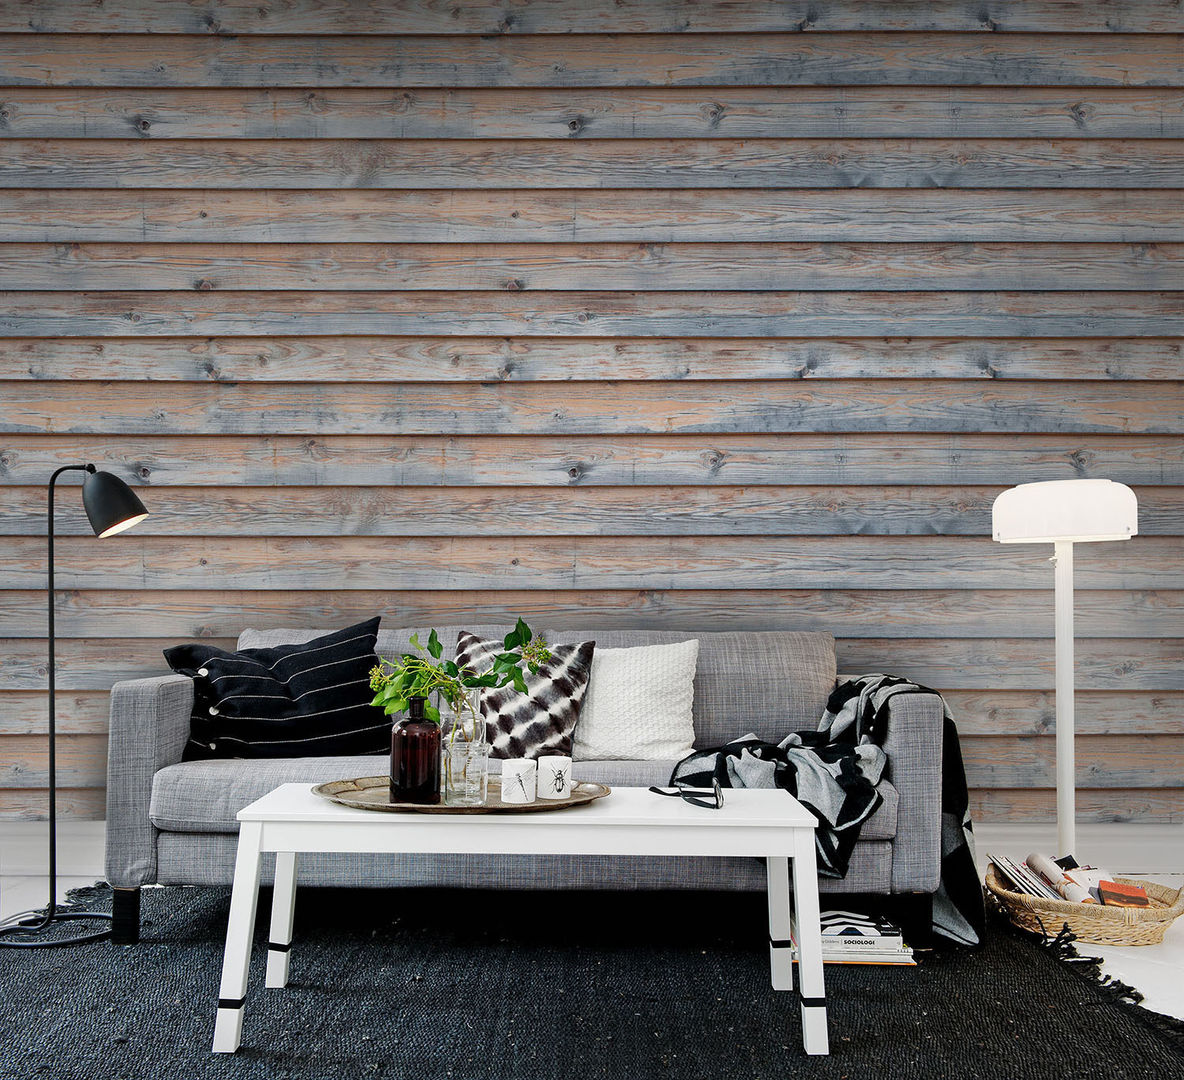 Planks Wallpaper by Mister smith interiors homify Paredes y pisos de estilo rústico Papel tapiz